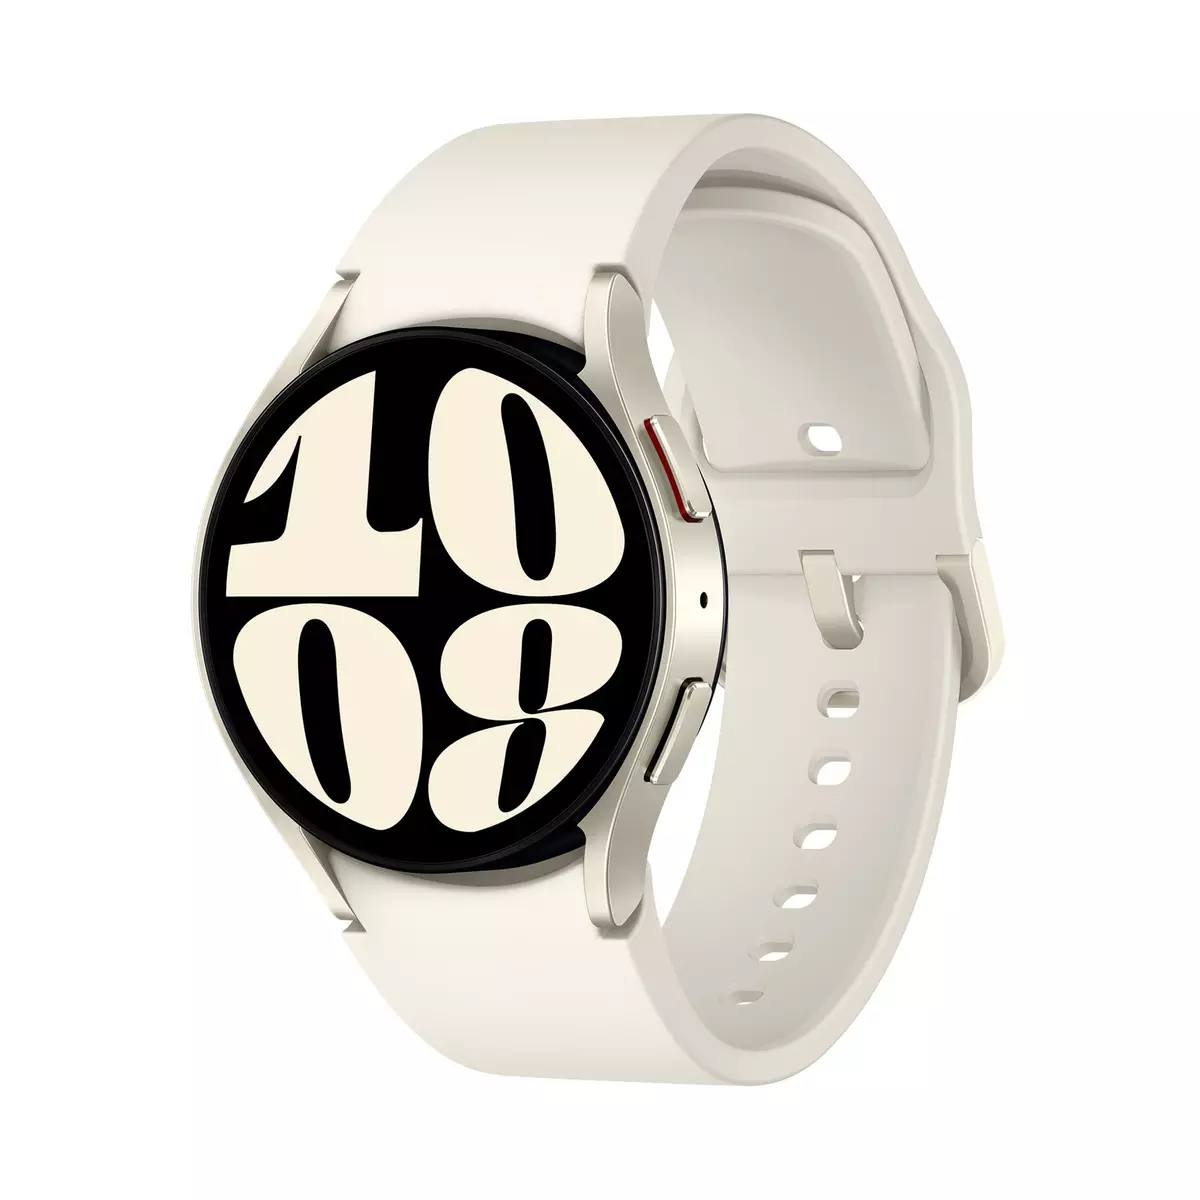 White Watch Montre Connectée intelligent - super qualité - Prix pas cher